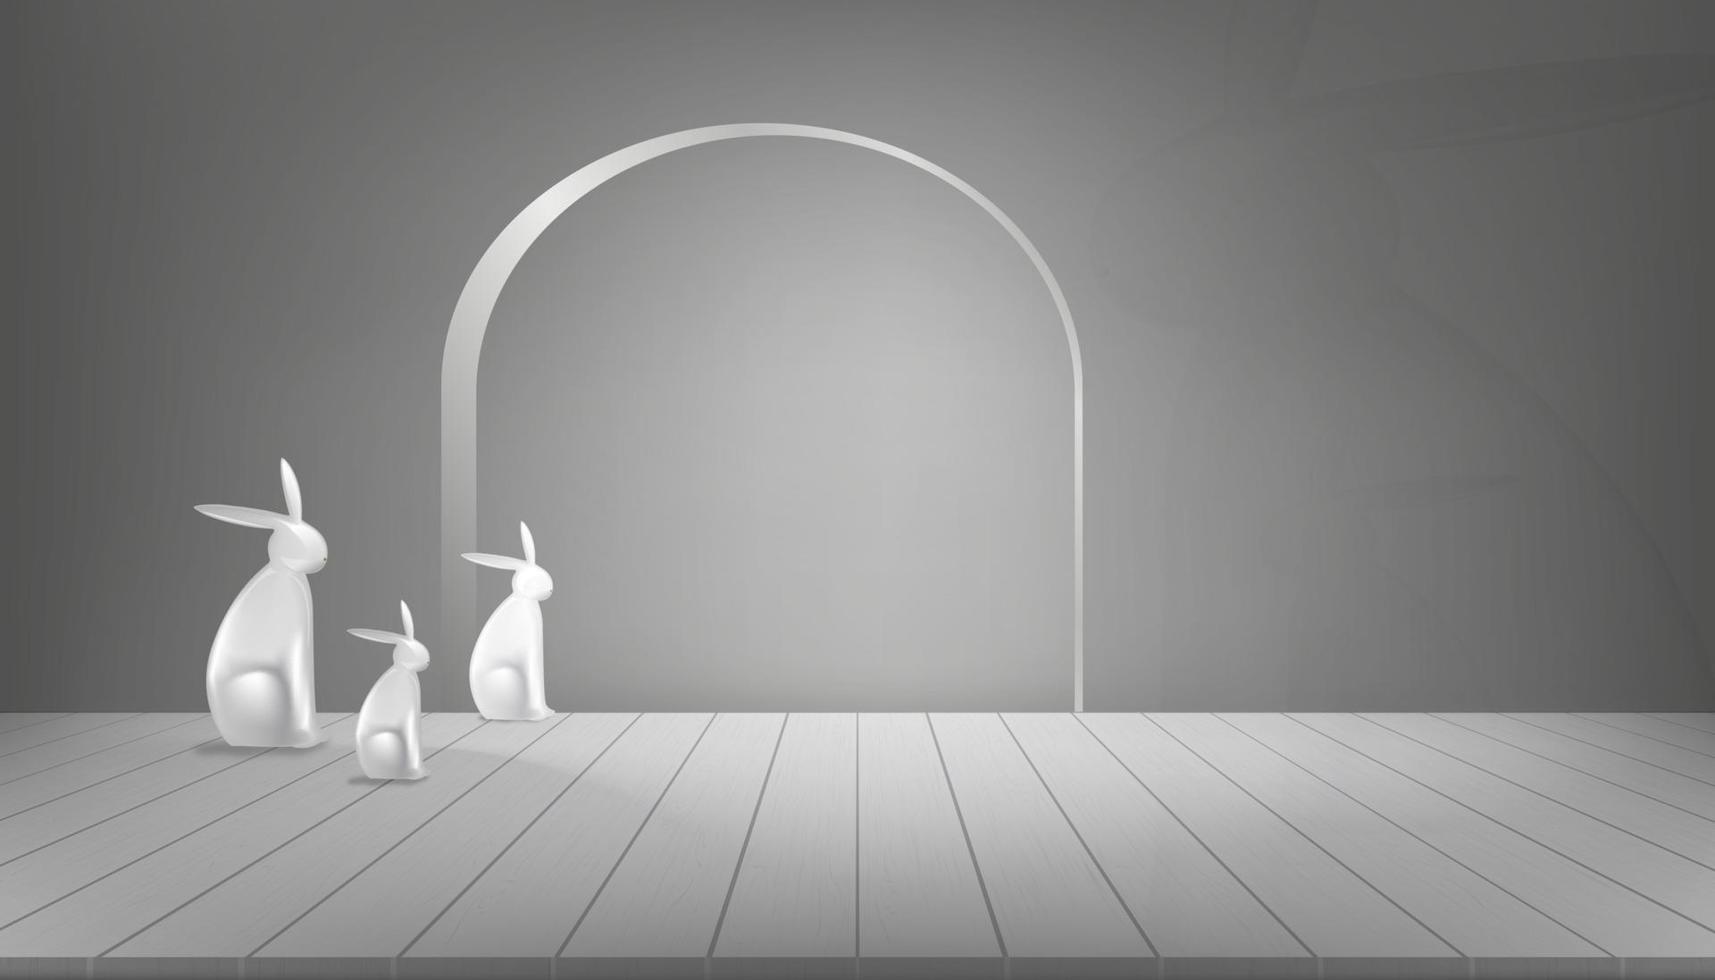 sala de estúdio com estátua de família de coelho 3d no painel de madeira com fundo de parede cinza escuro ilustração vetorial com piso cinza com luz e sombra na placa de parede conceito de design de estilo moderno mínimo vetor